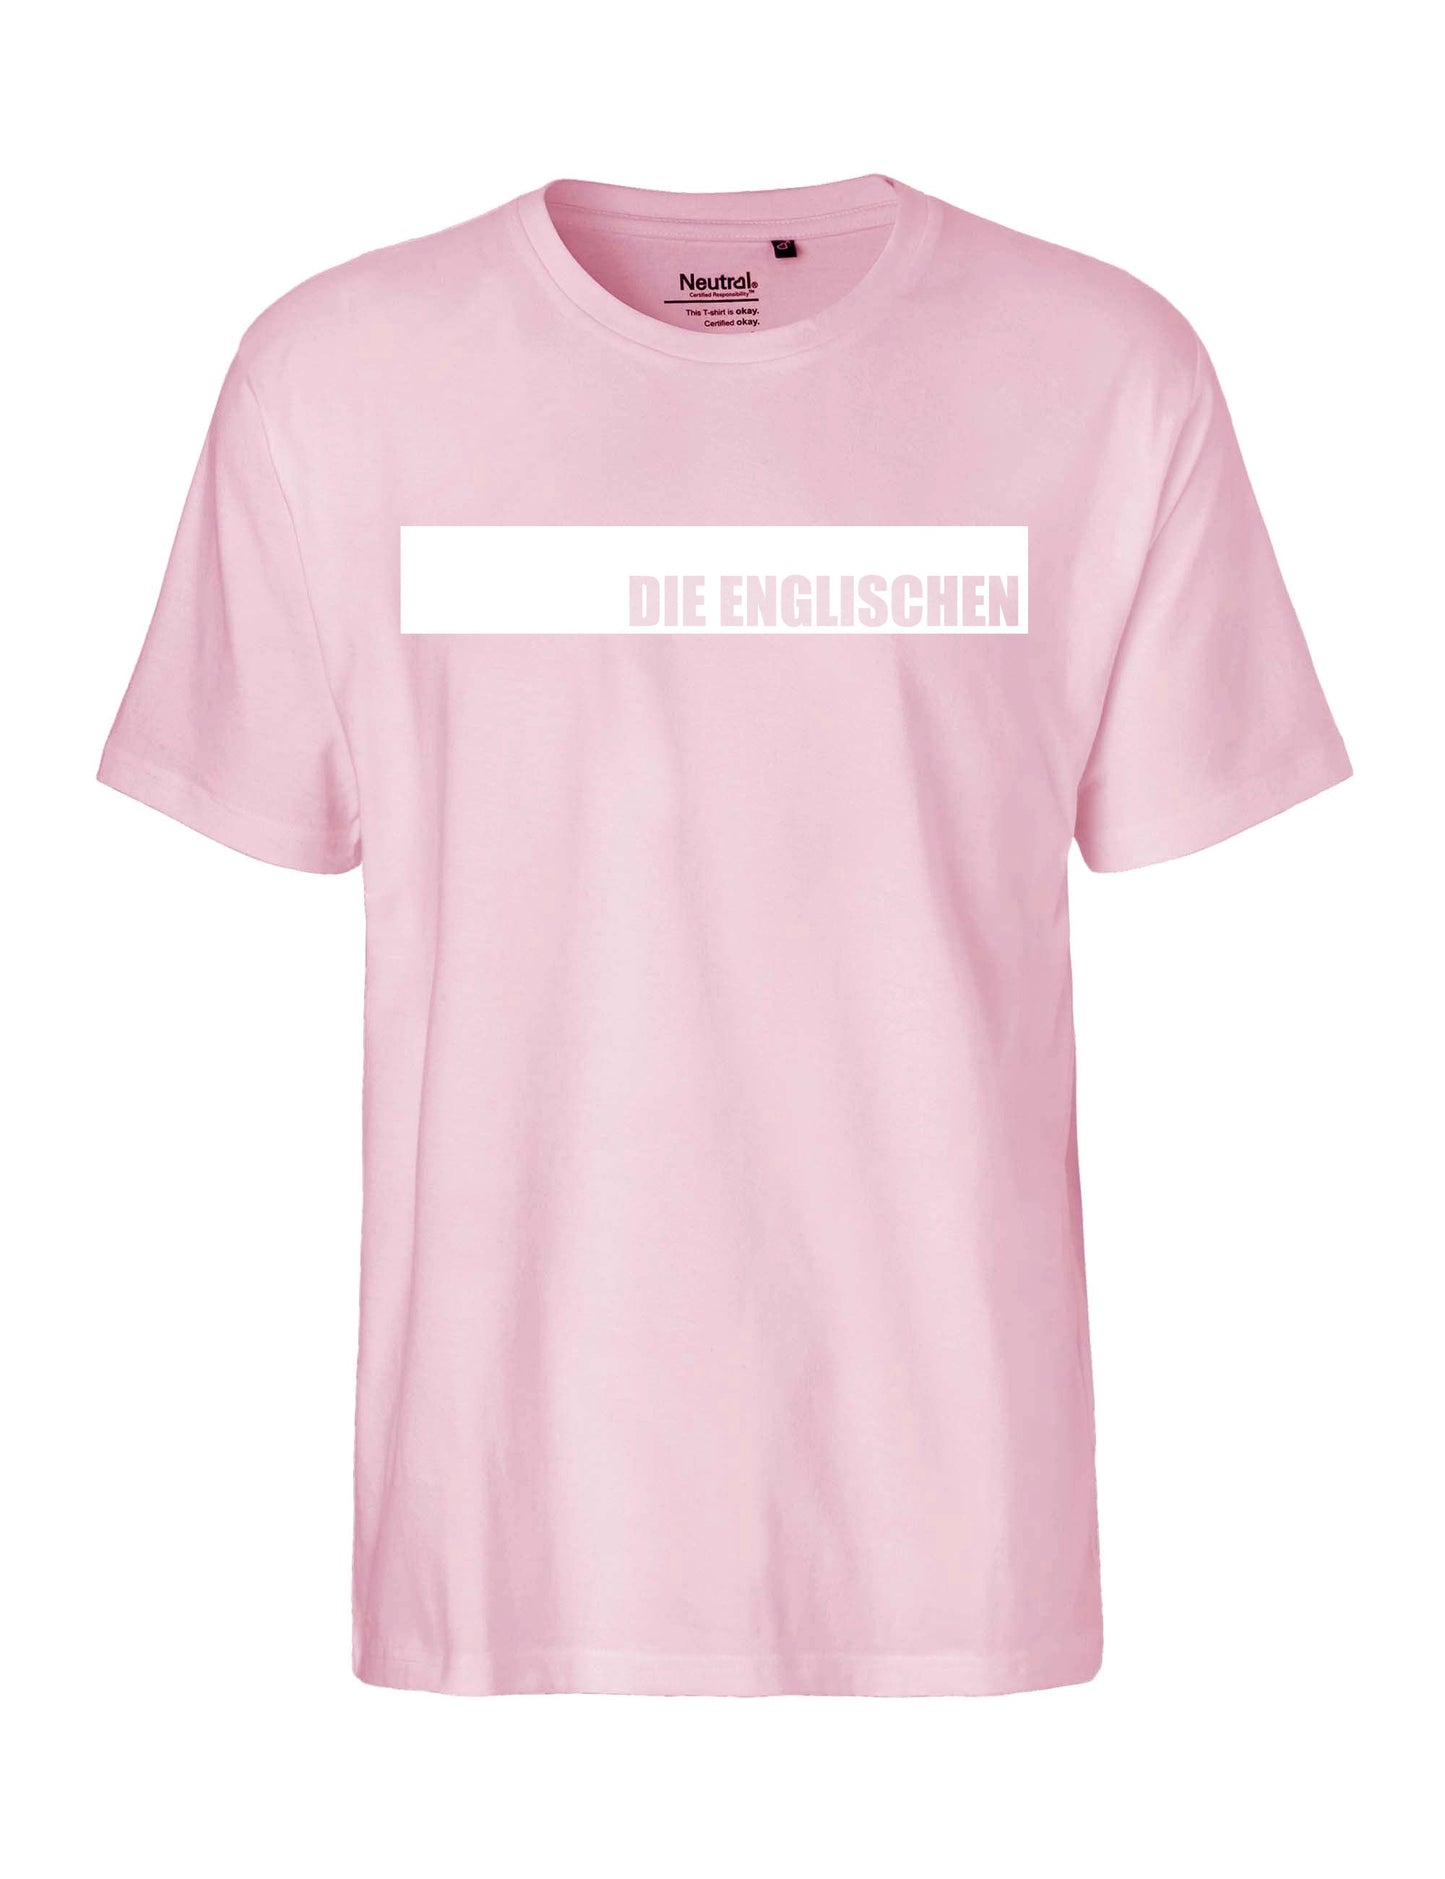 Shirt mit Brustprint "DIE ENGLISCHEN" - Herren